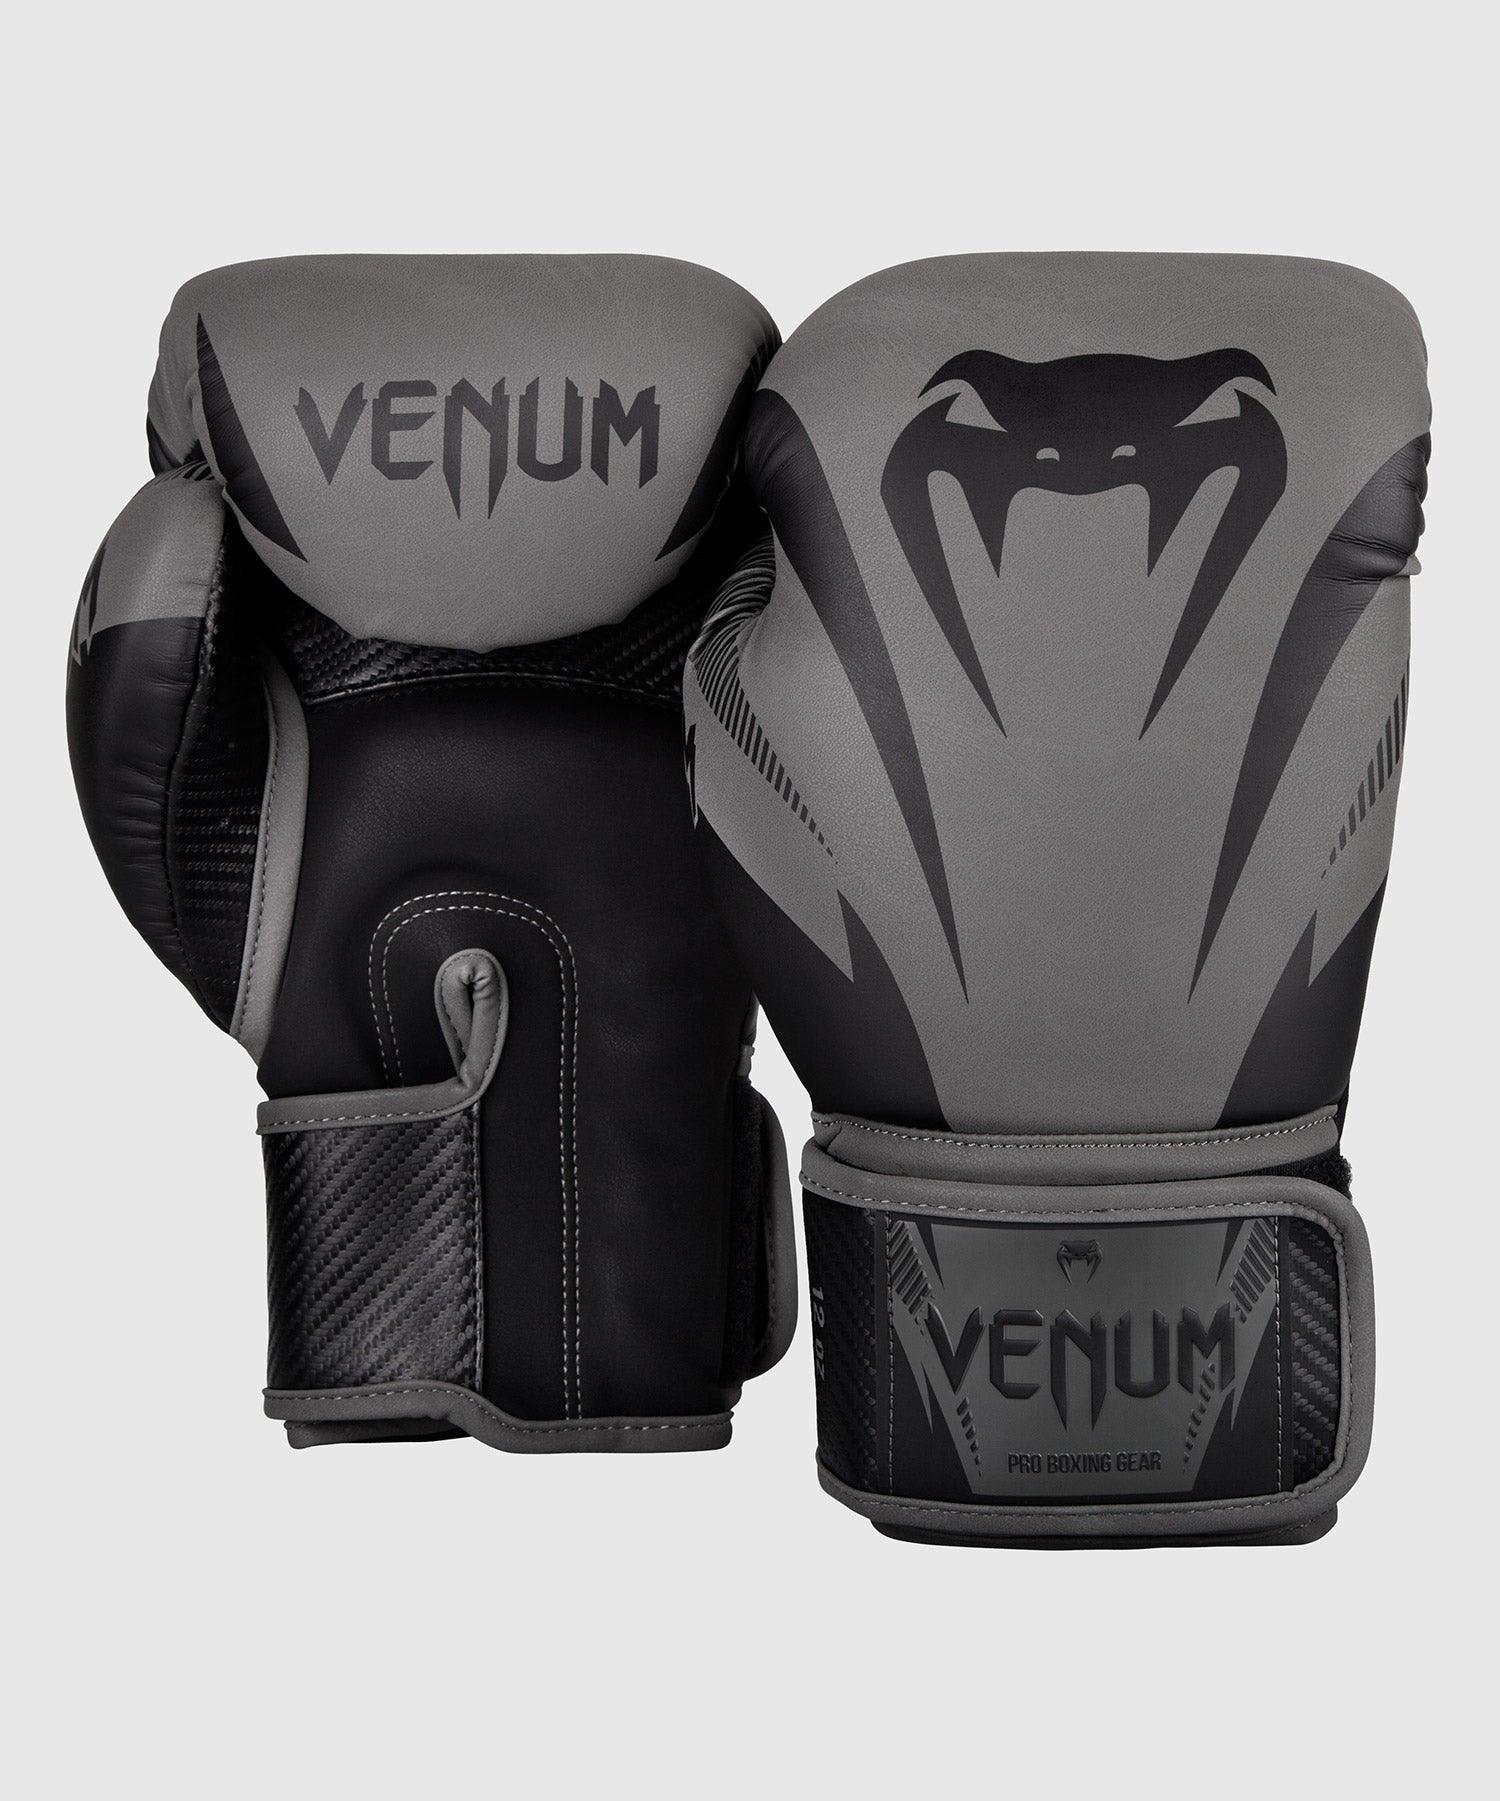 Venum Impact Boxing Gloves - Grey/Black - Venum